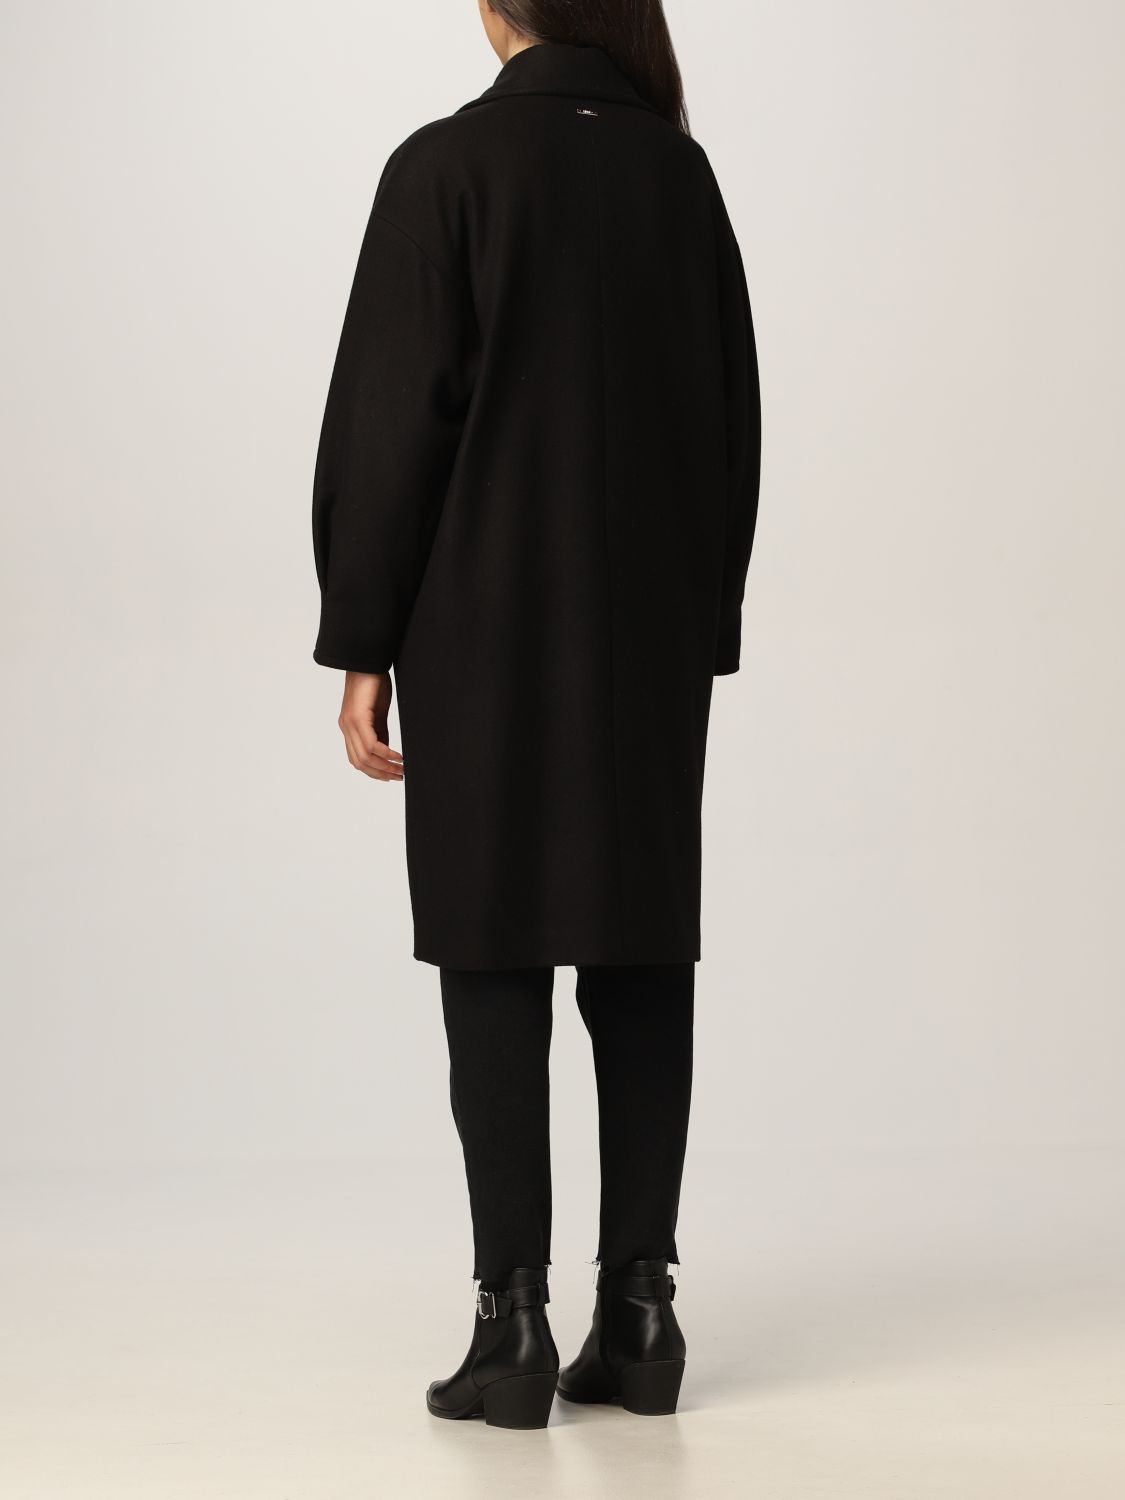 LIU JO: double-breasted coat in wool blend - Black | Liu Jo coat ...